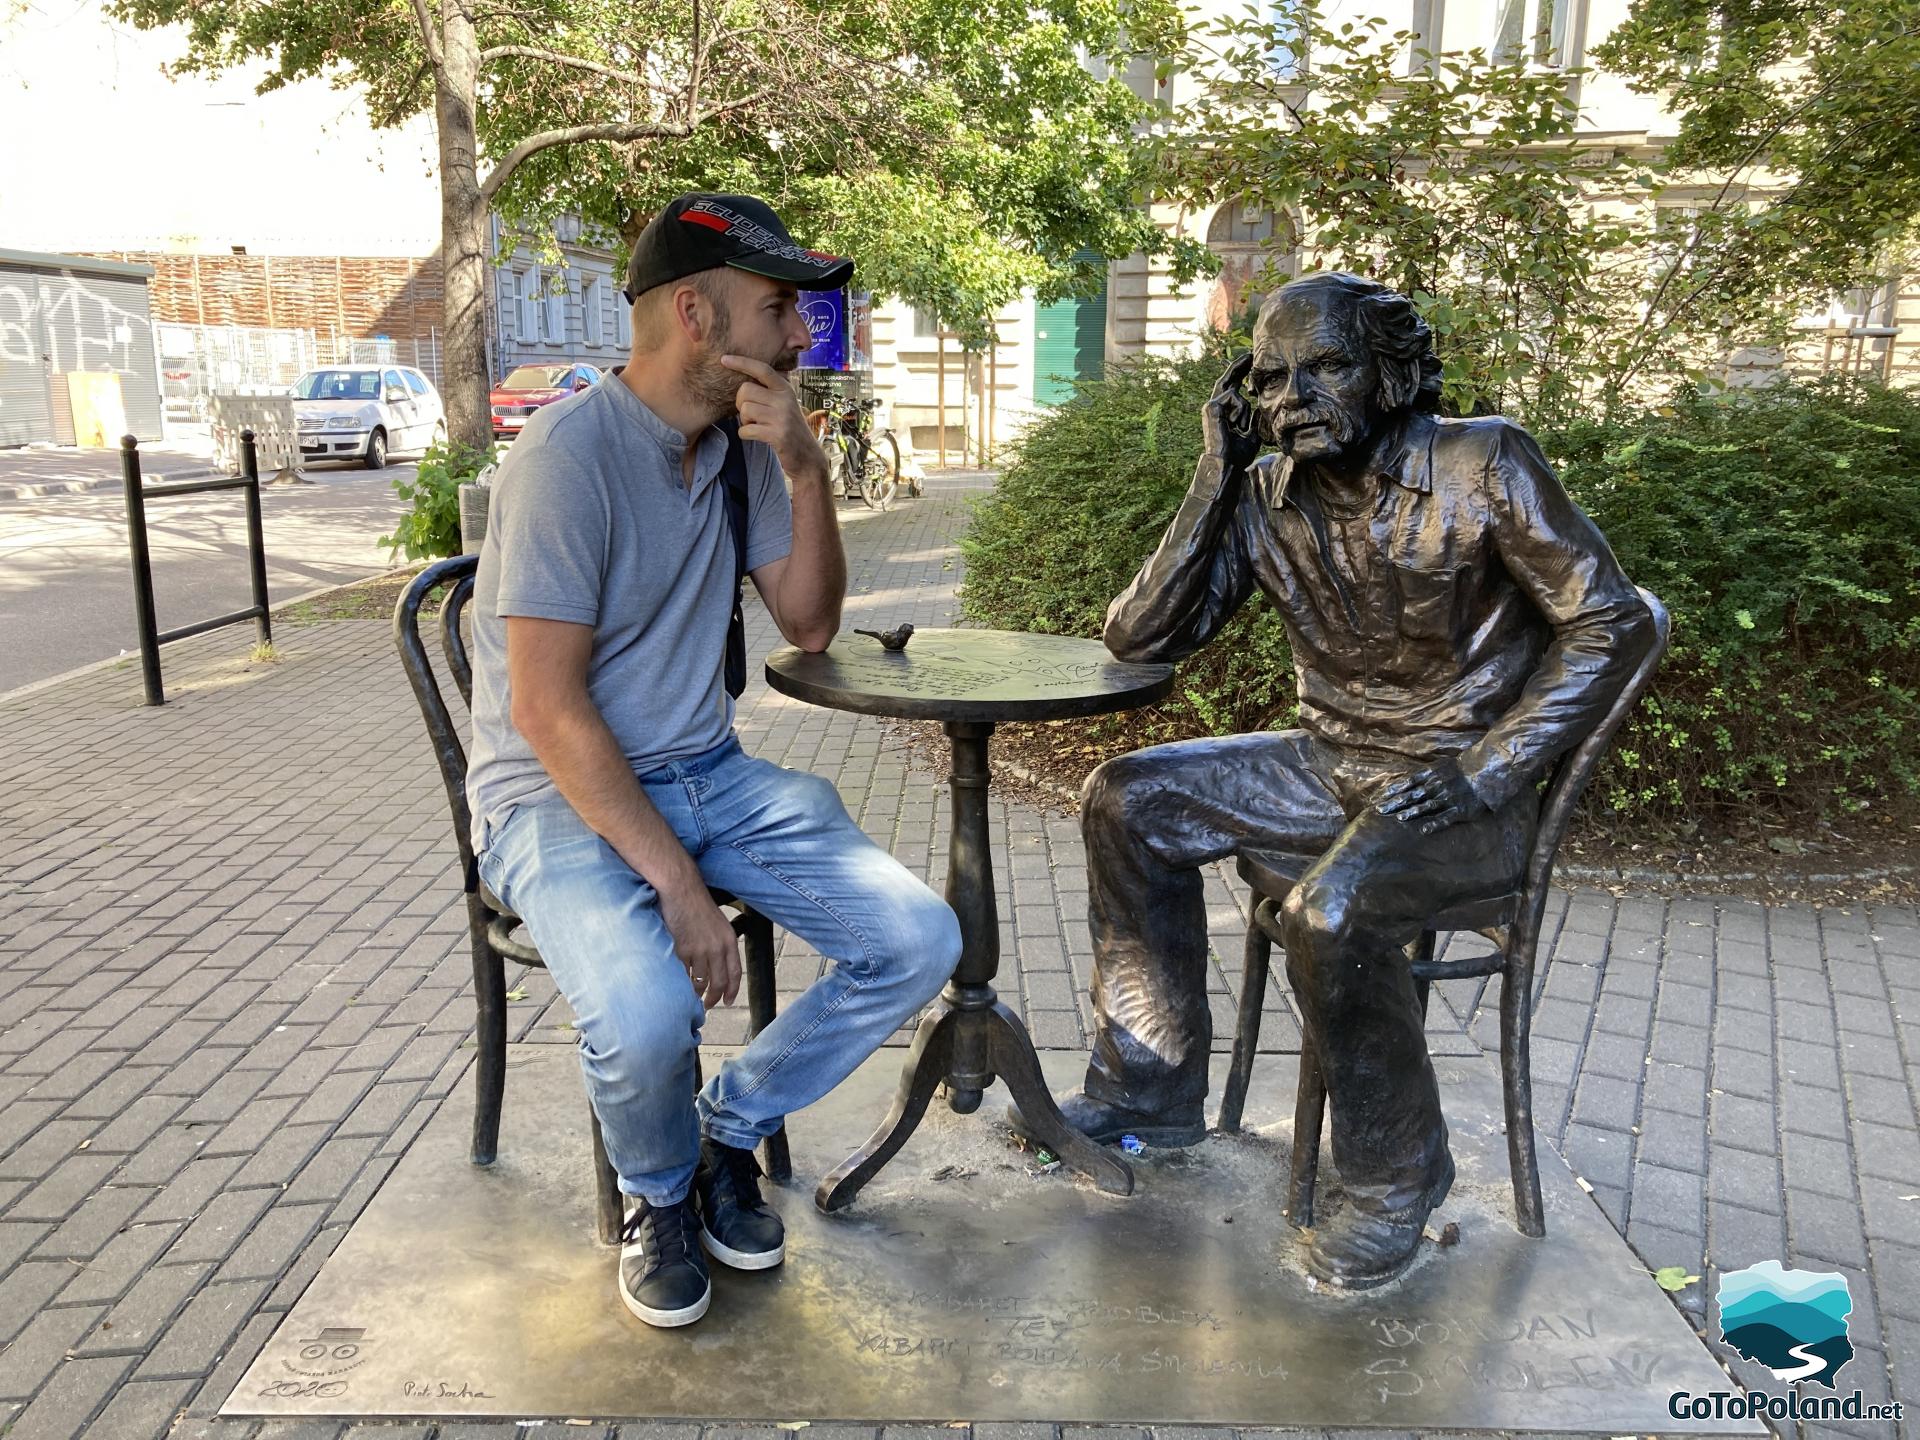 a man sits next to a sculpture of a man